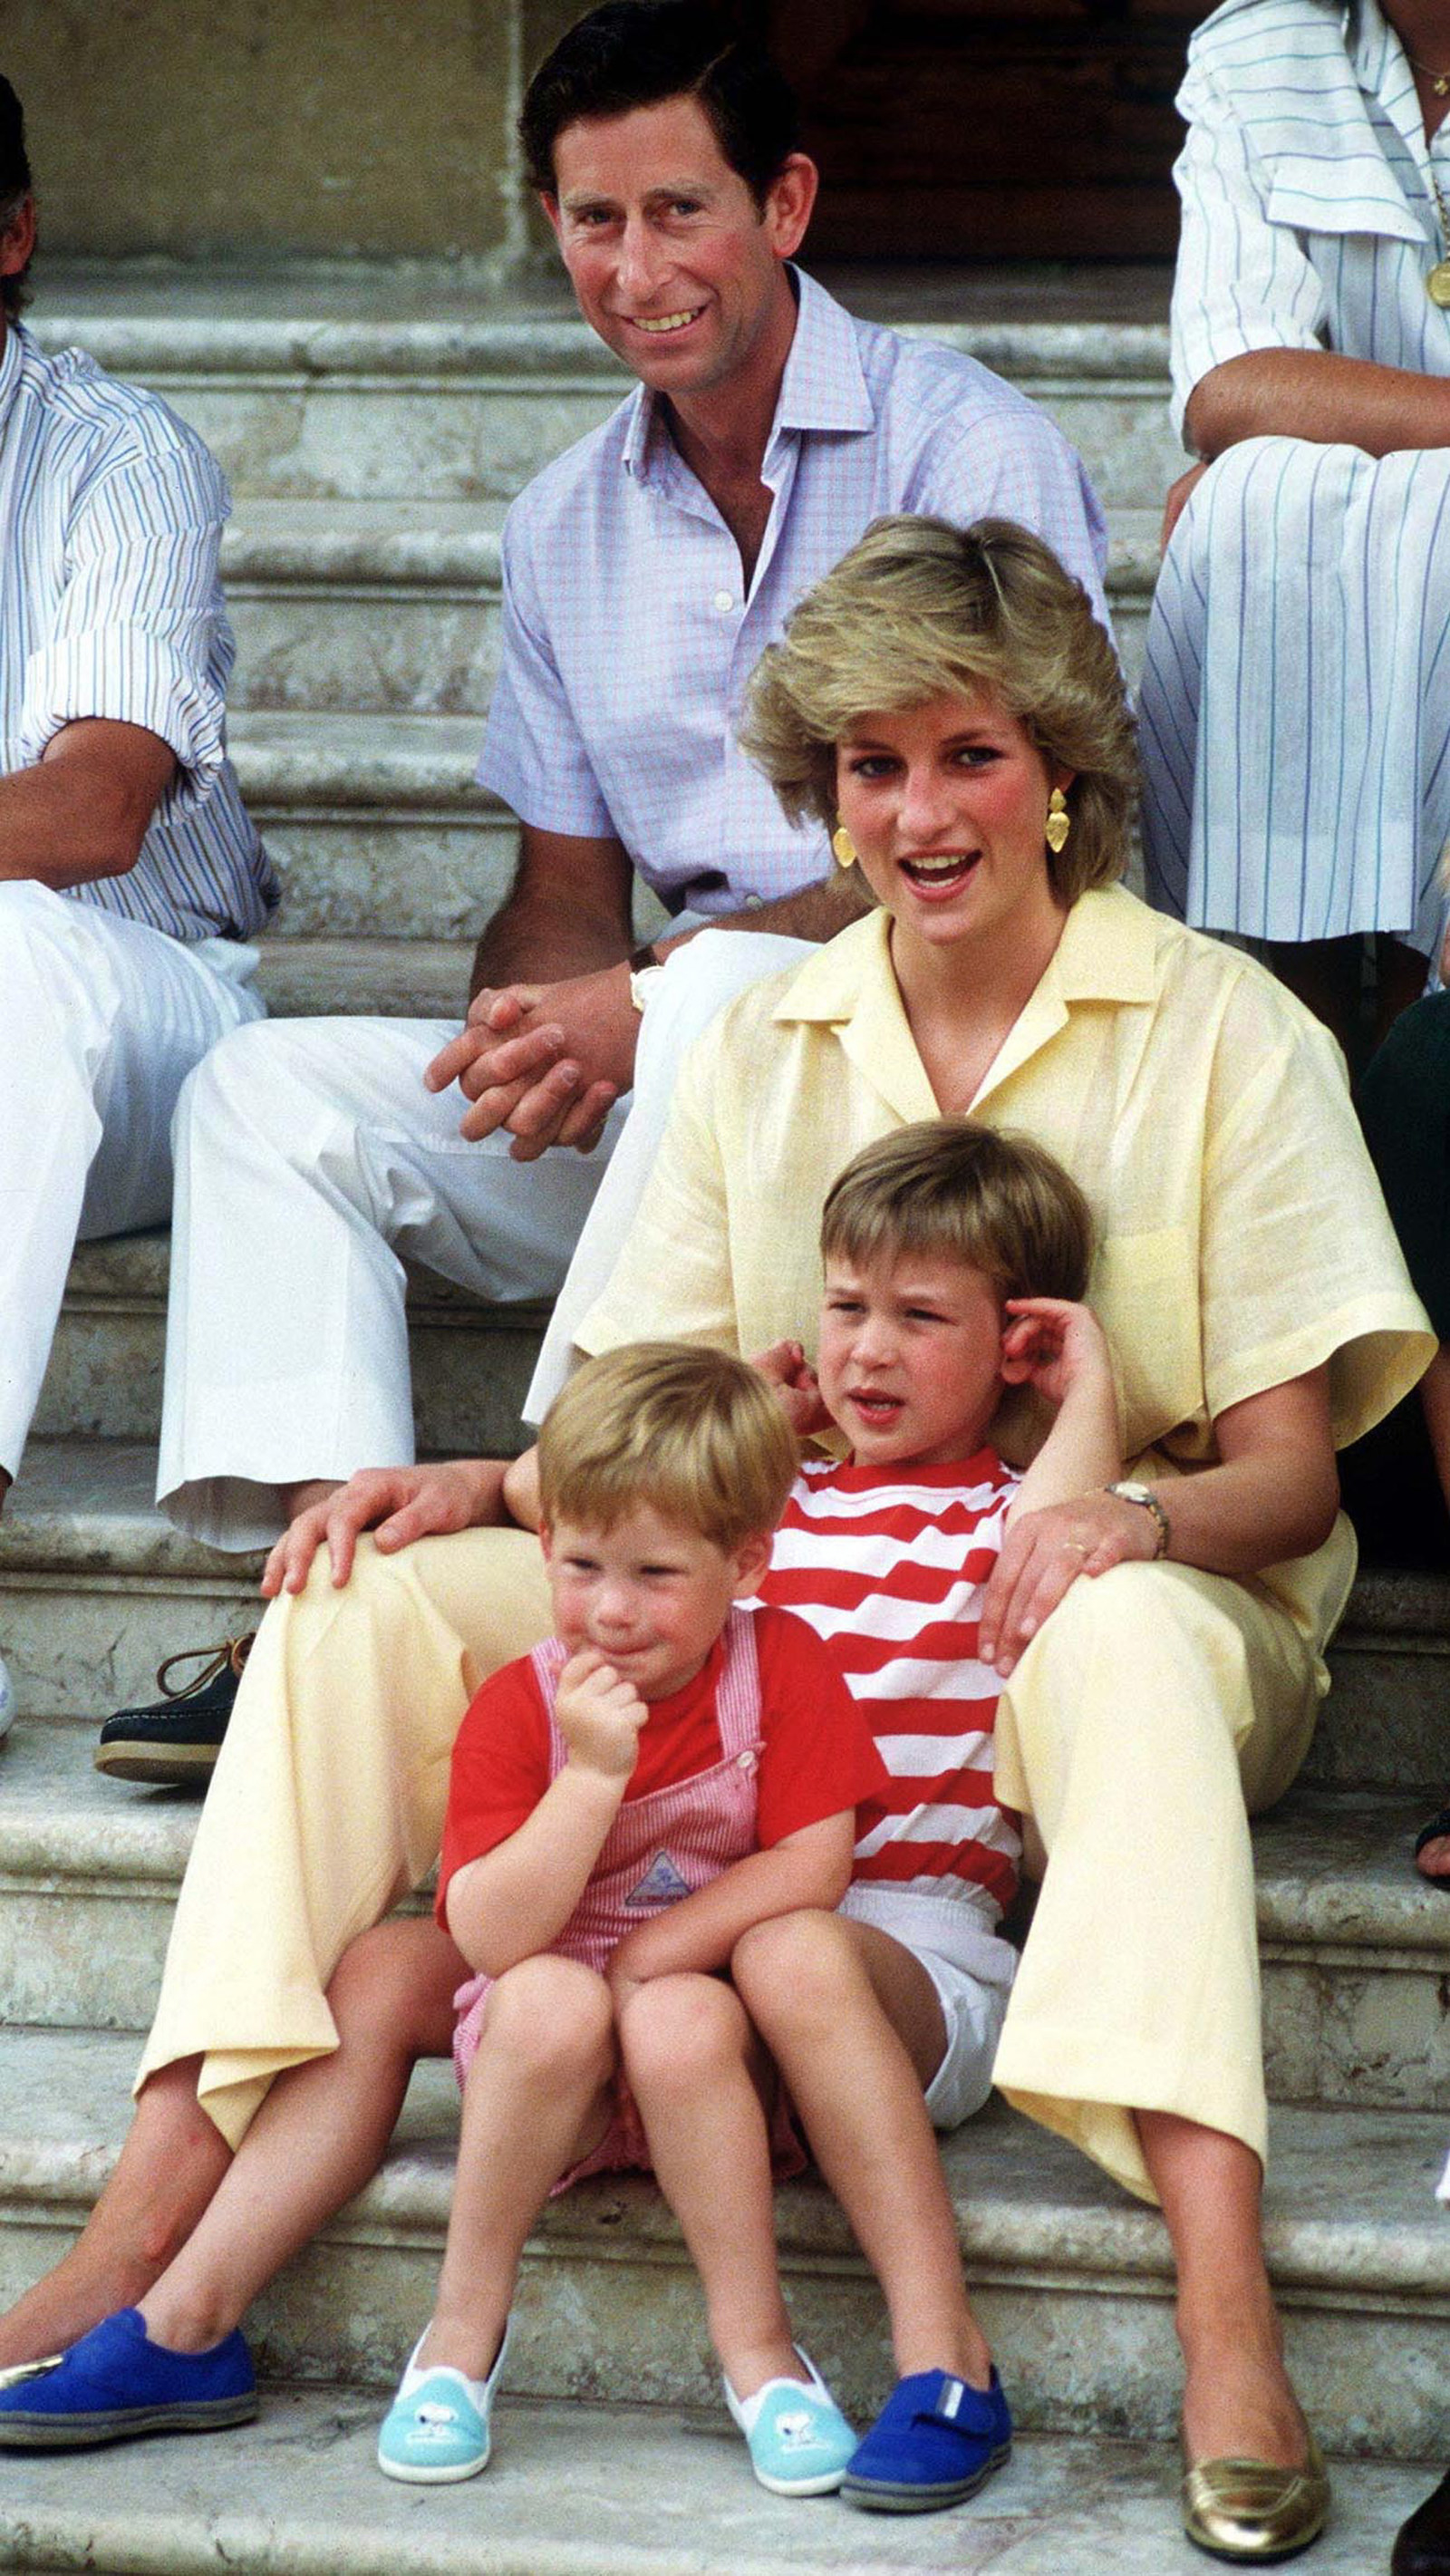 Princesa Diana: madre, humanitaria e icono de la moda